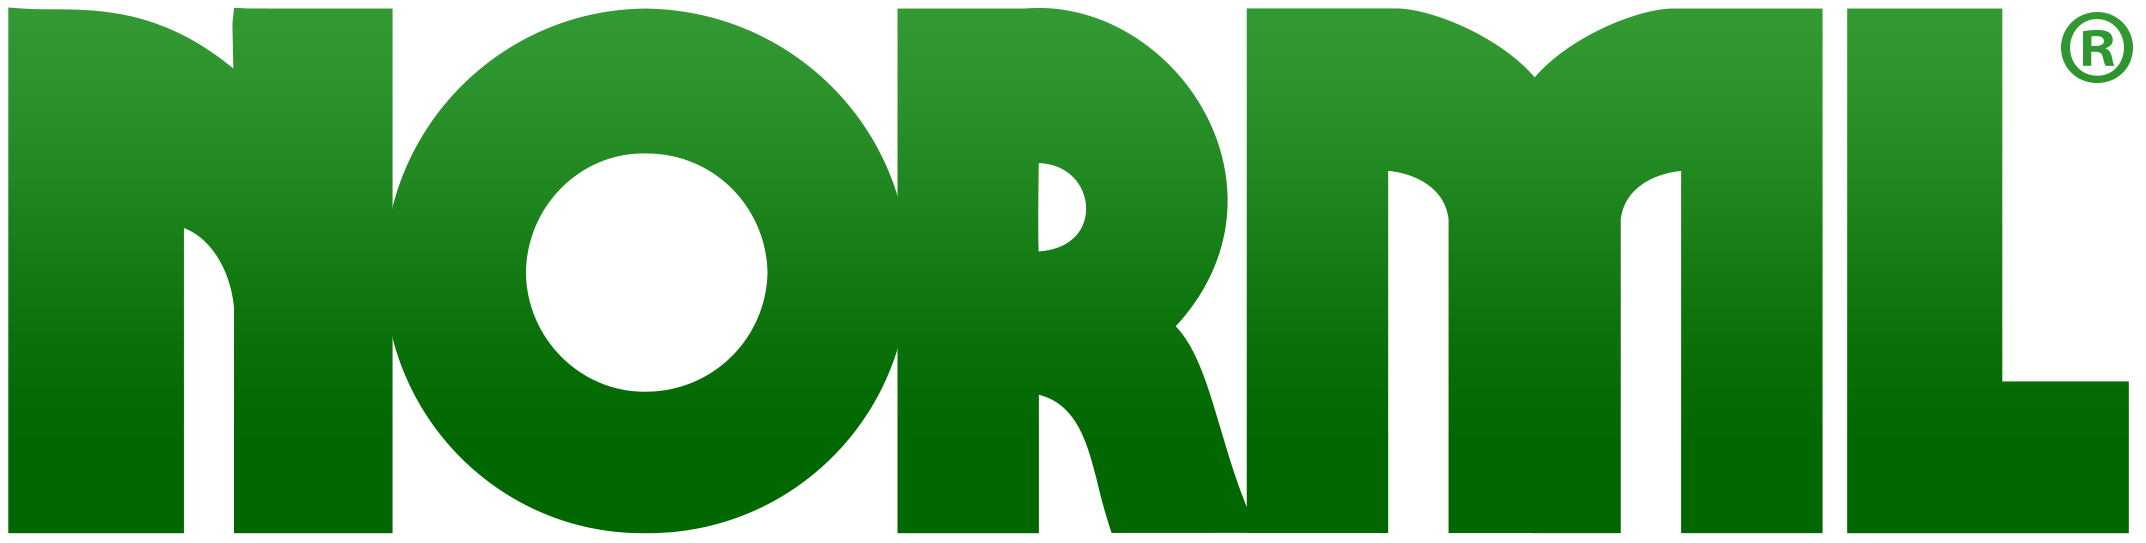 NORML-logo-reg-trademark-grad